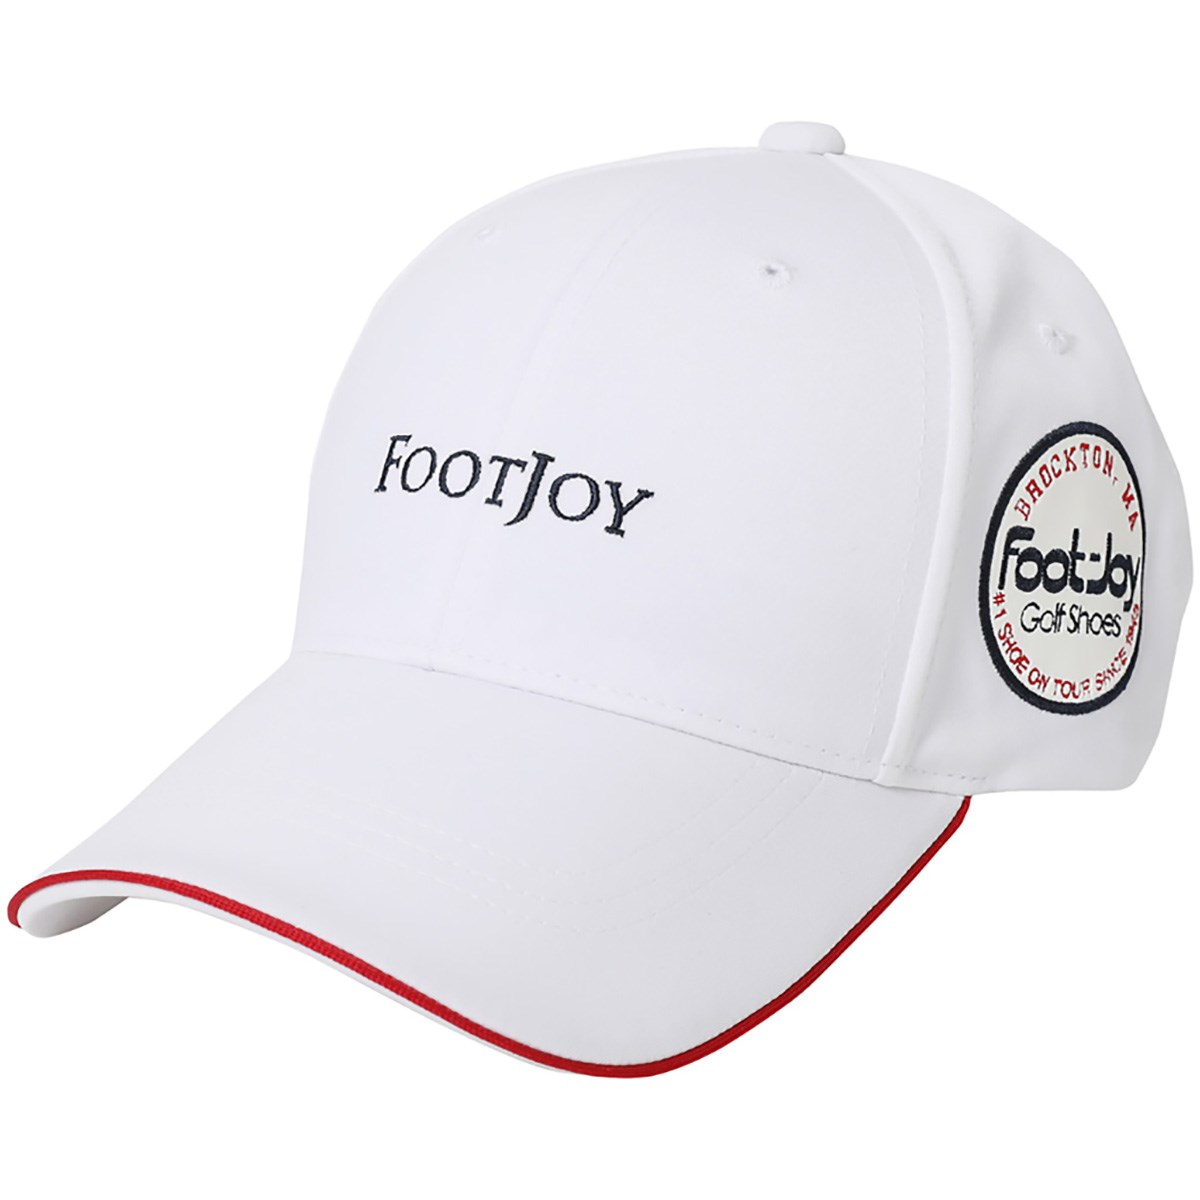 Dショッピング フットジョイ Foot Joy アイコンキャップ フリー ホワイト カテゴリ 帽子 バイザーの販売できる商品 Gdoゴルフショップ ドコモの通販サイト